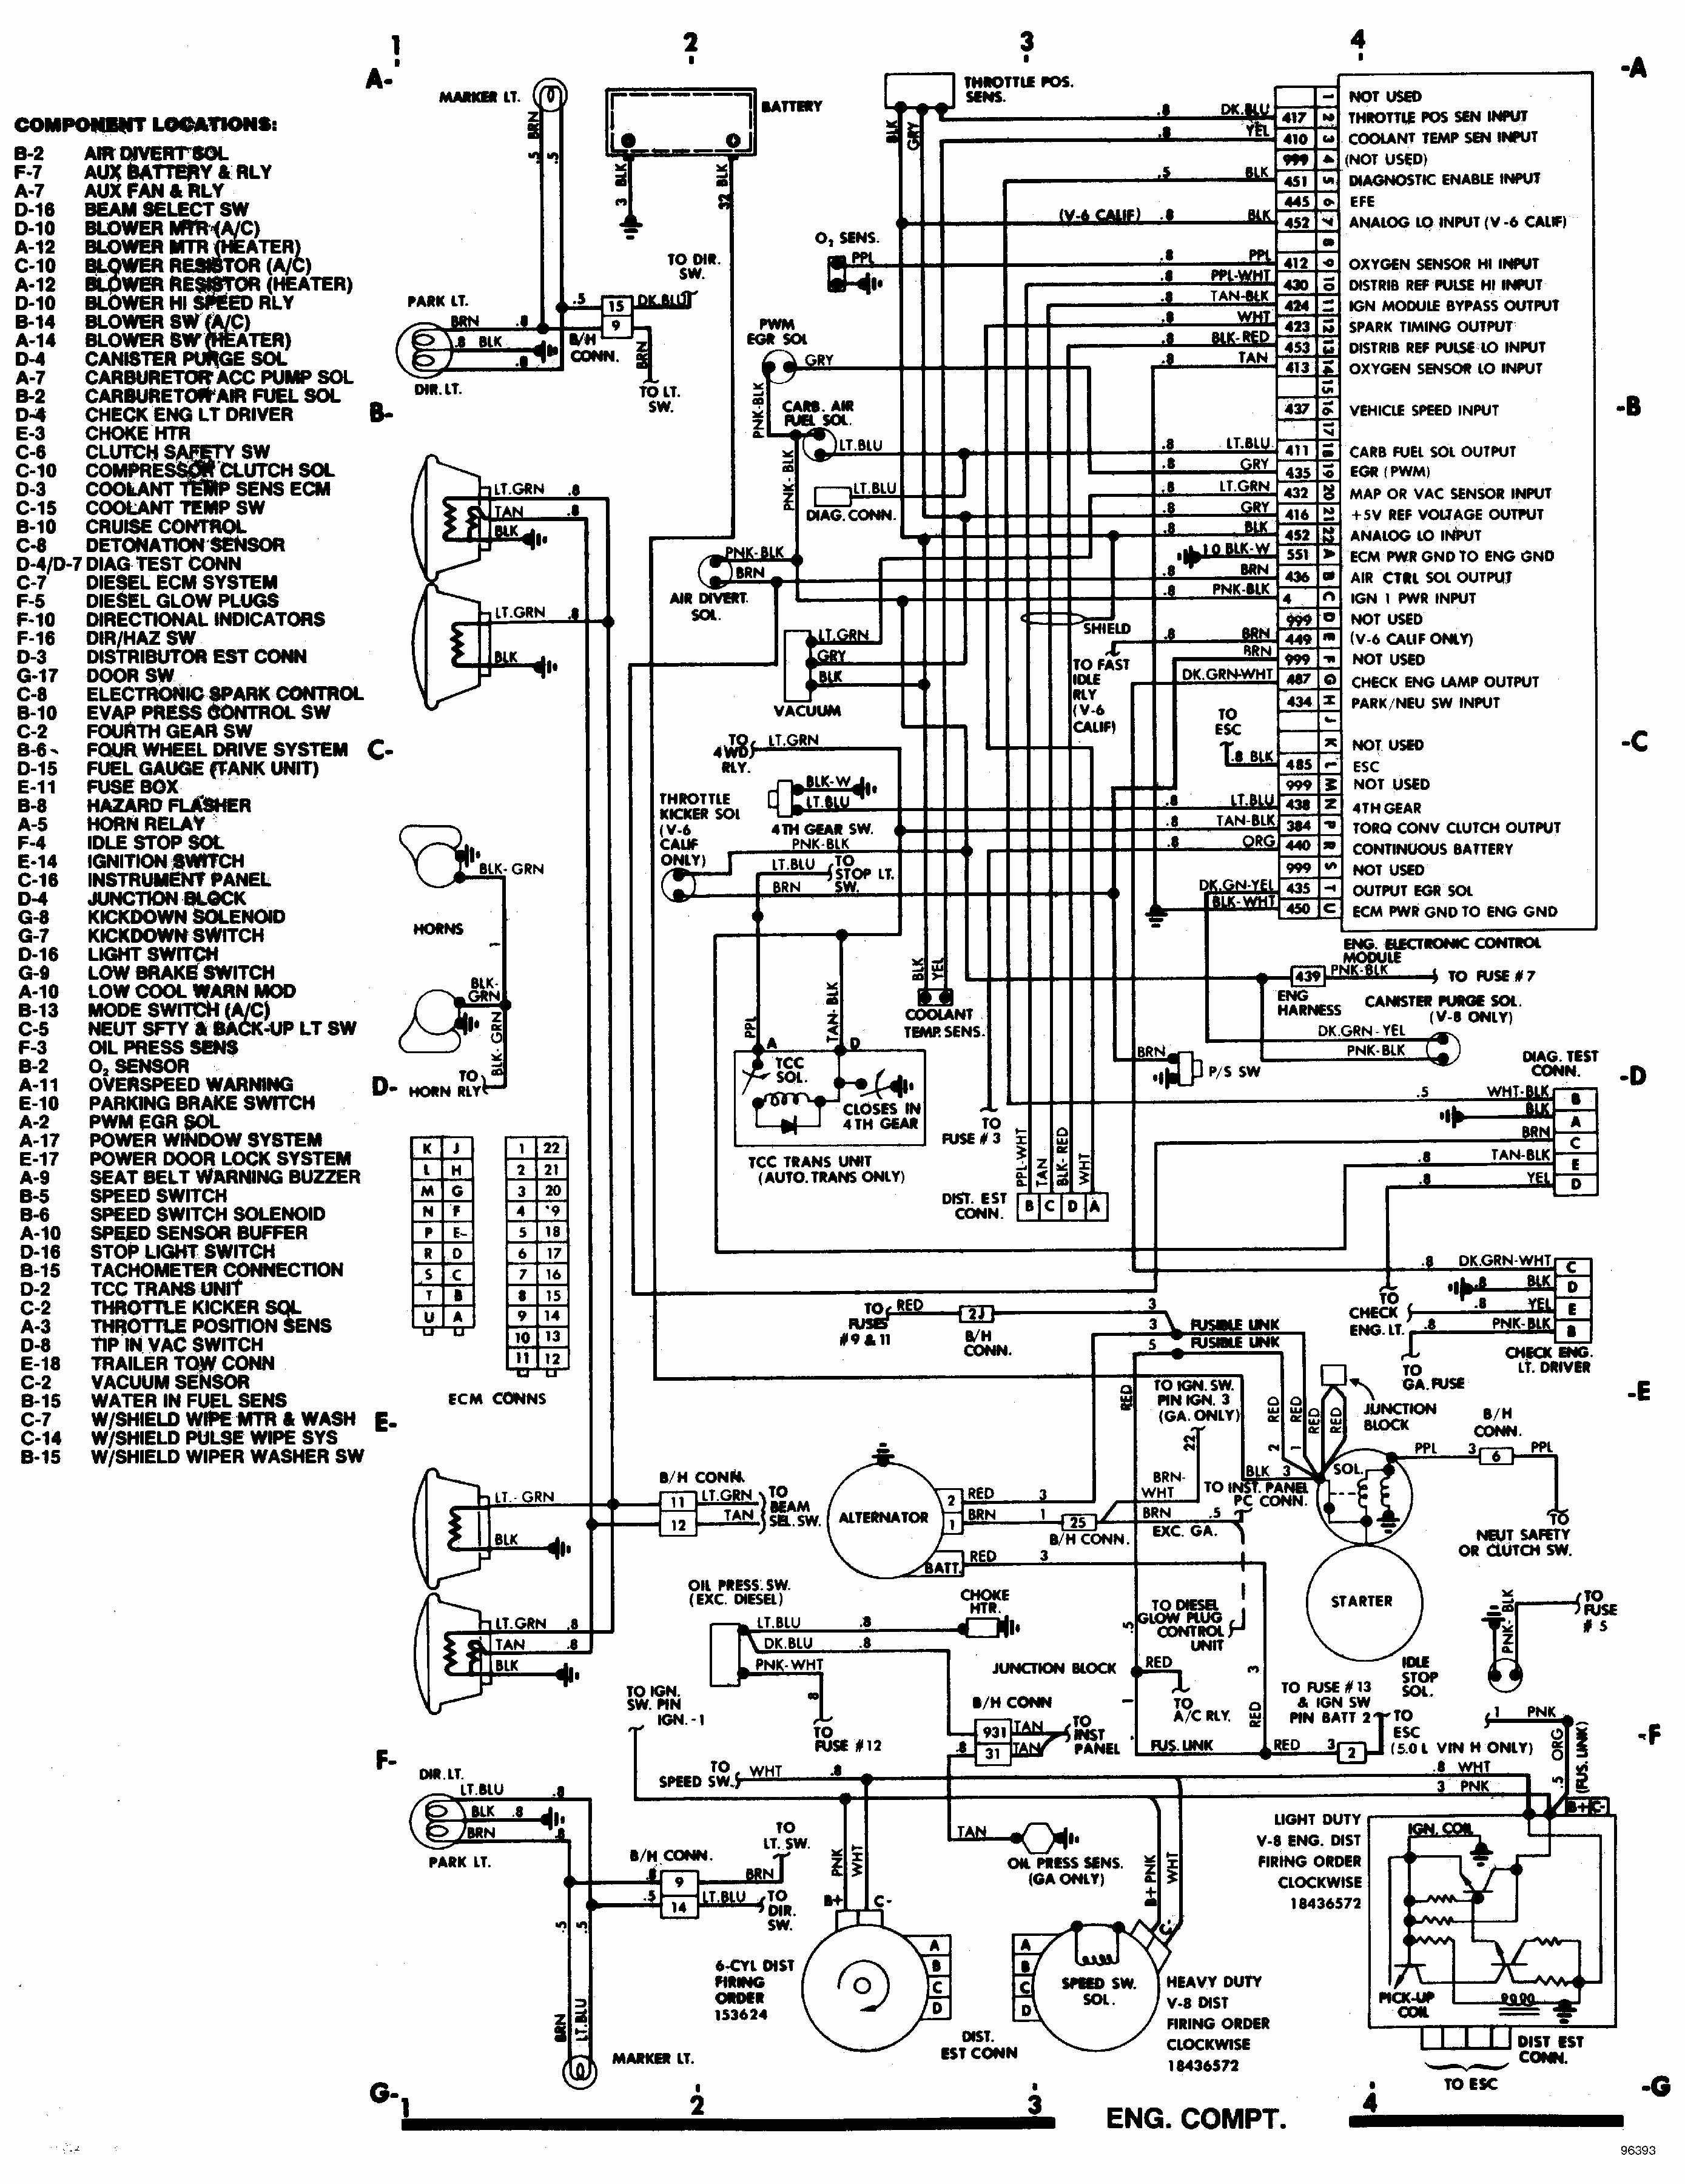 Ecm Motor Wiring Diagram | Wiring Diagram